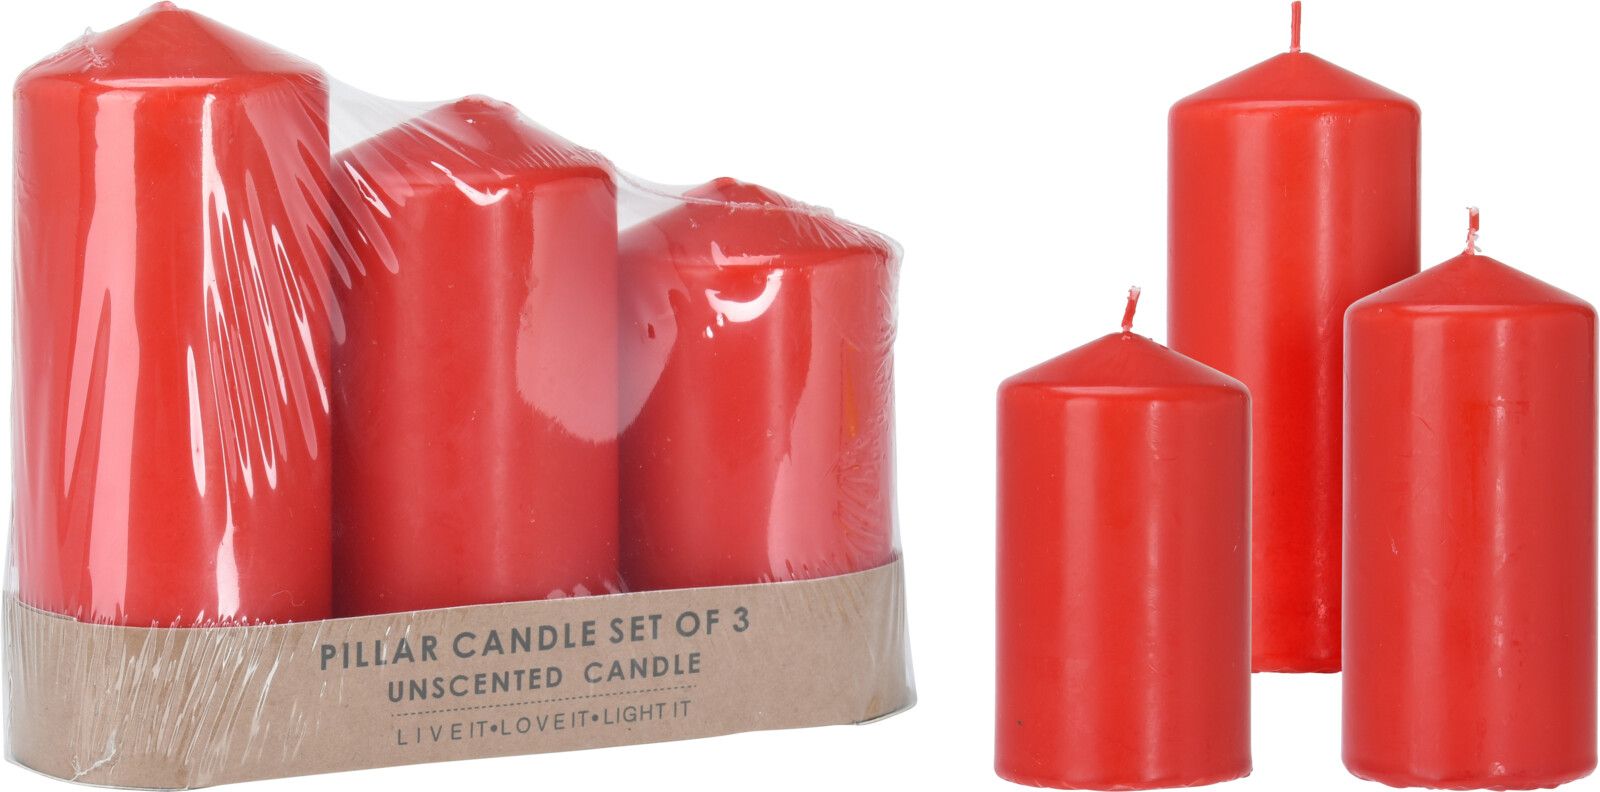 Trade Shop - 12 X Candeline Galleggianti Rosse Rosso Matrimonio Decorazione  Tealight Candele